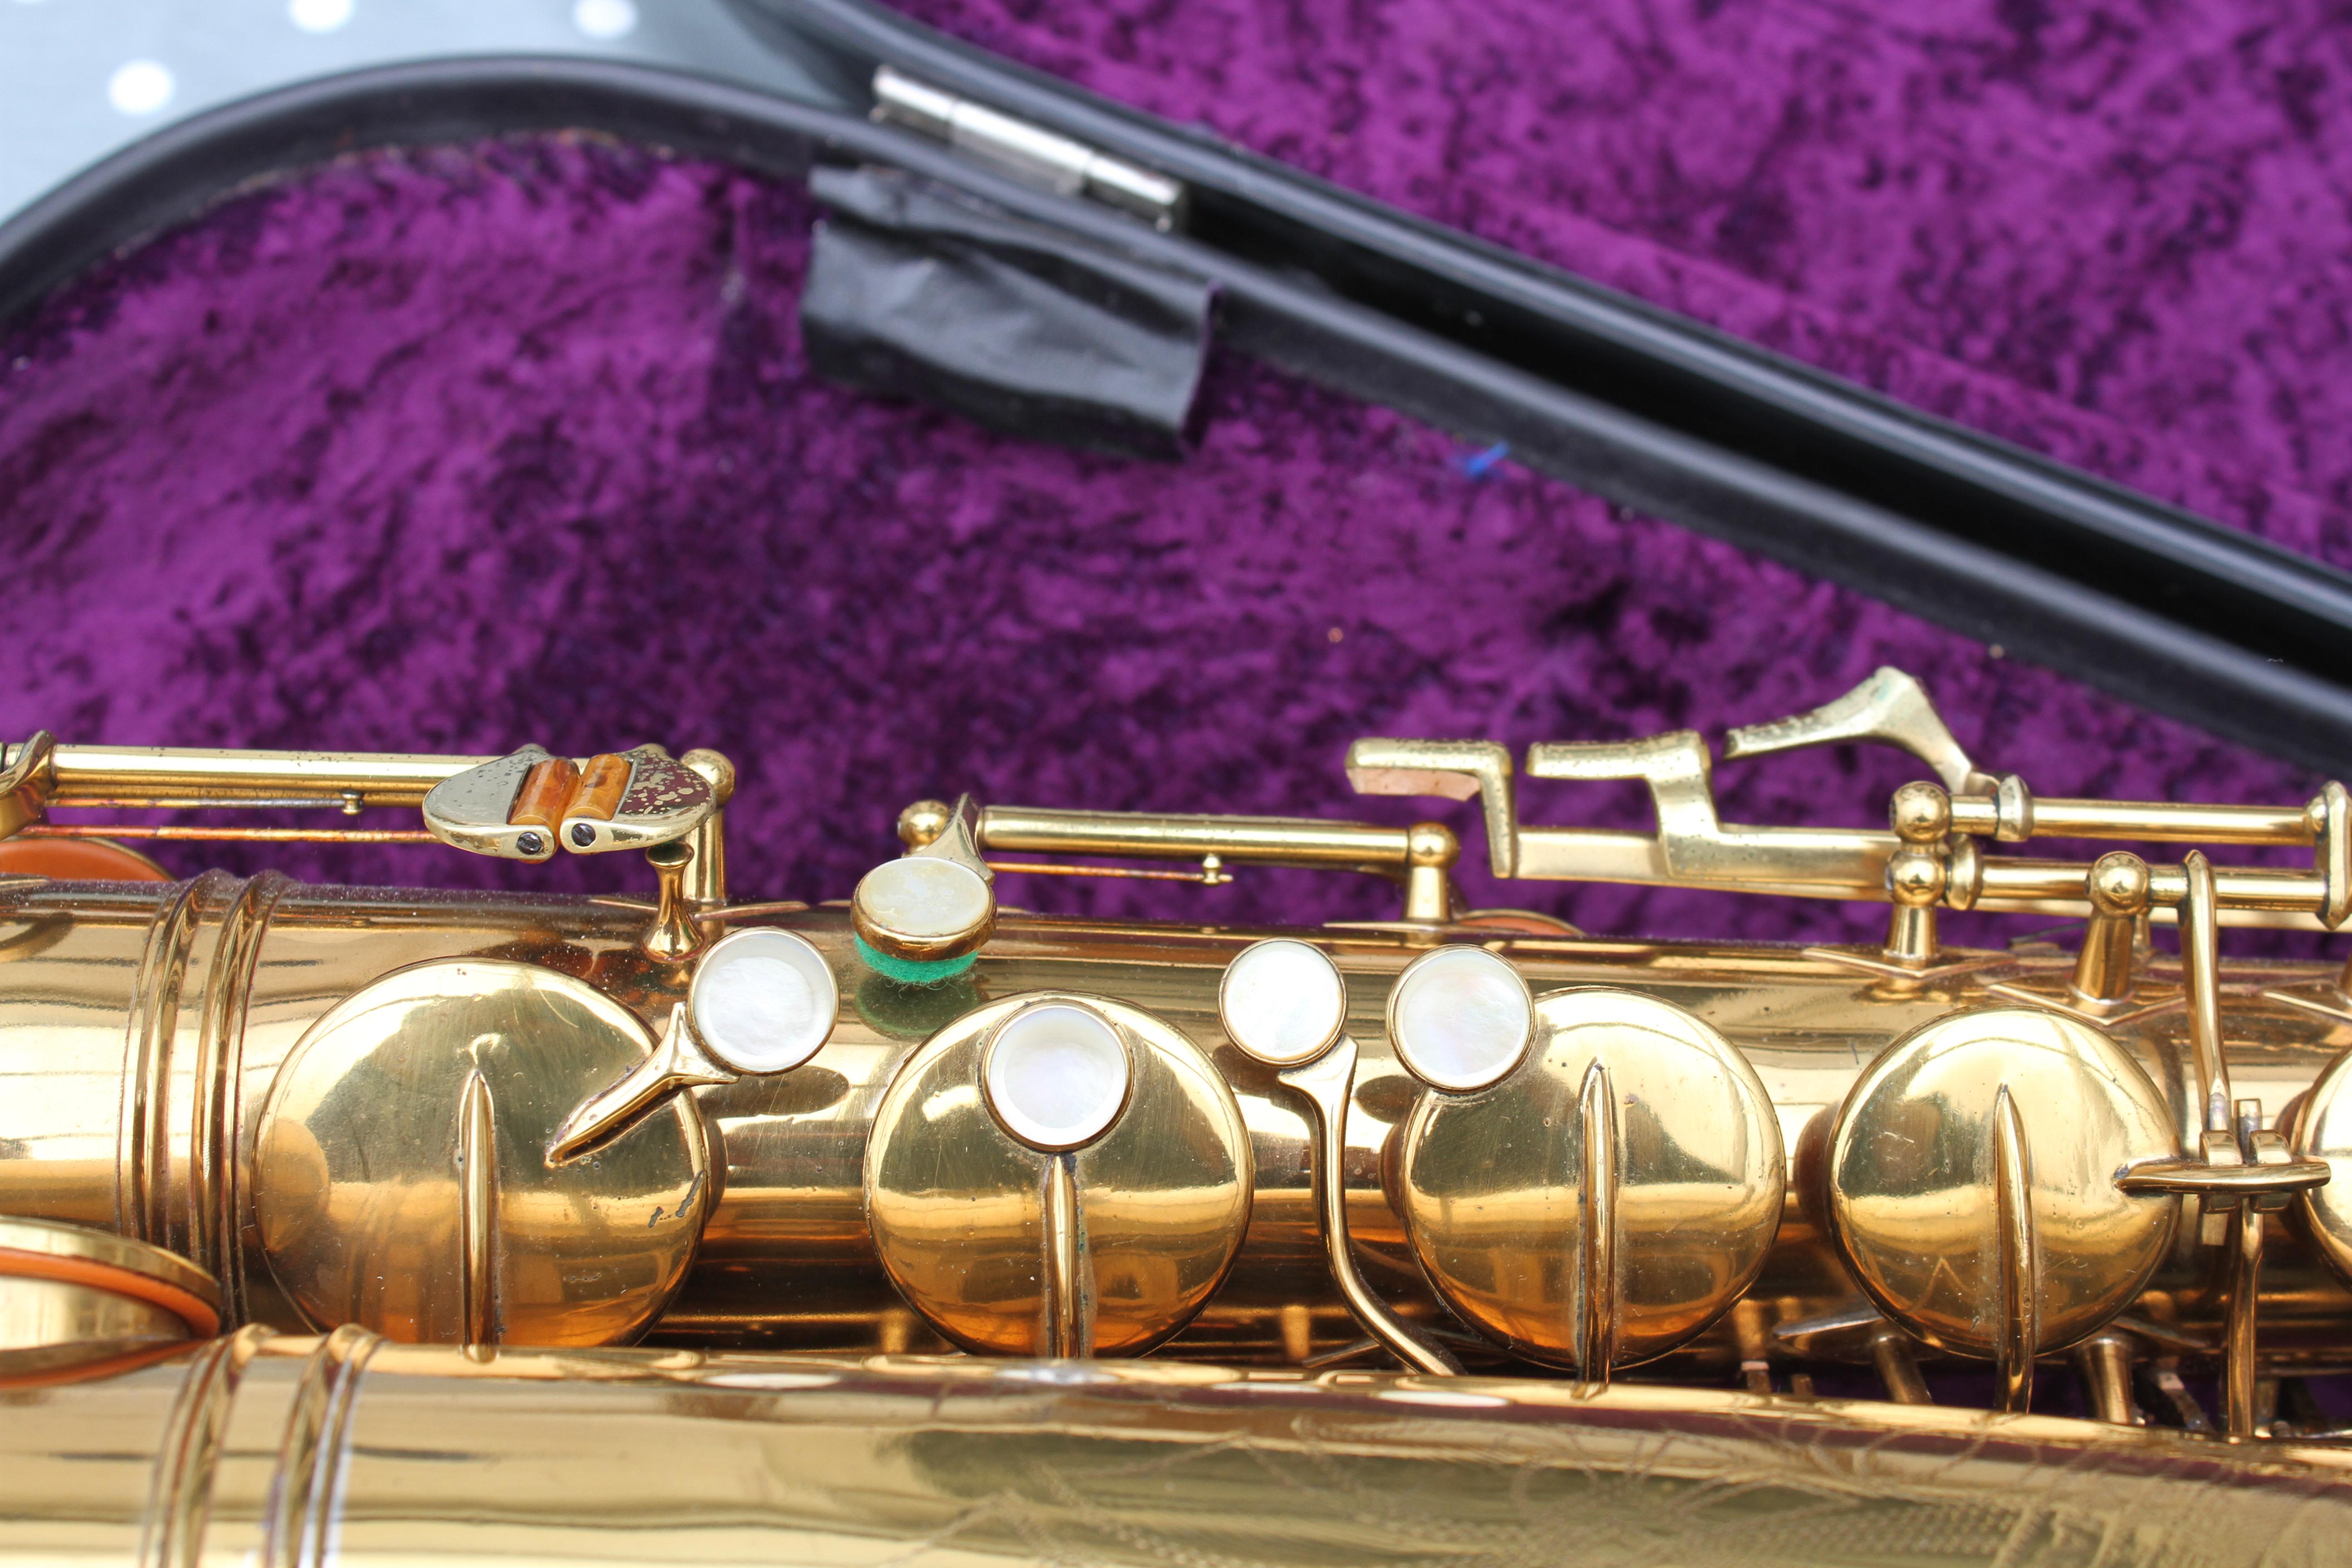 value of a buescher tenor sax